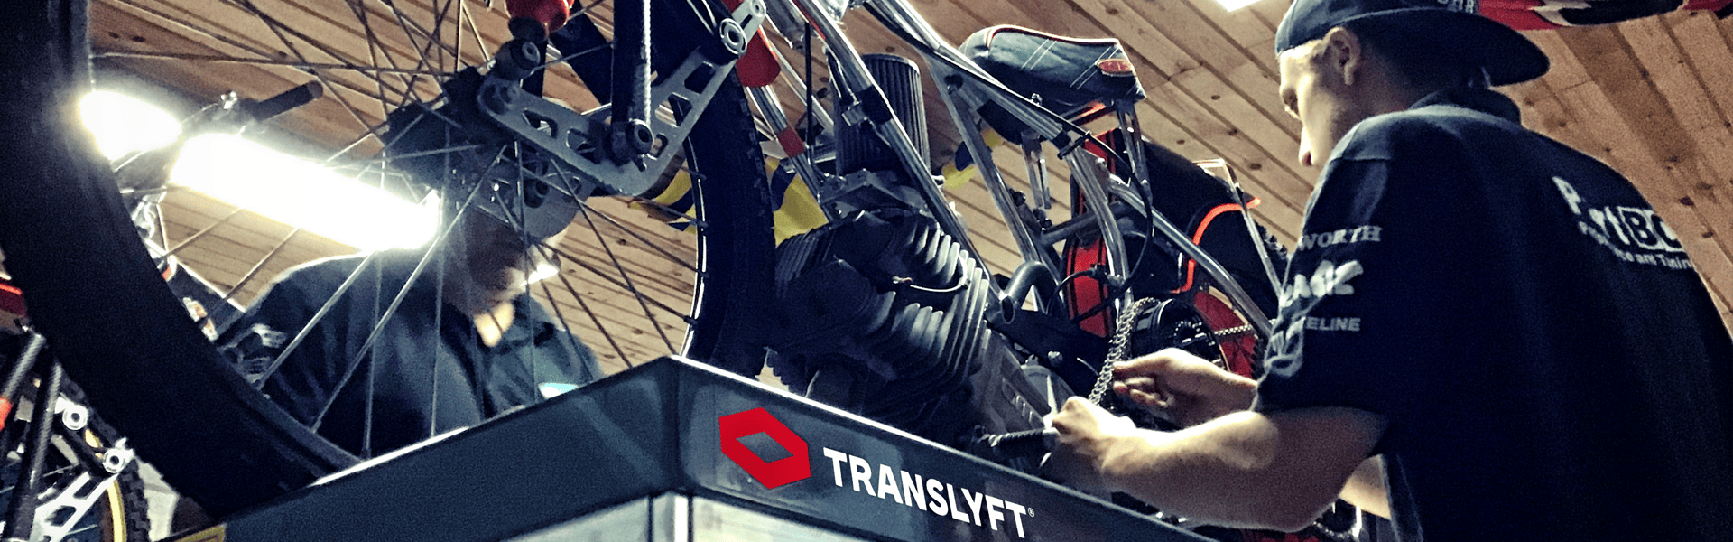 Reparation af speedwaycykel på sakselift